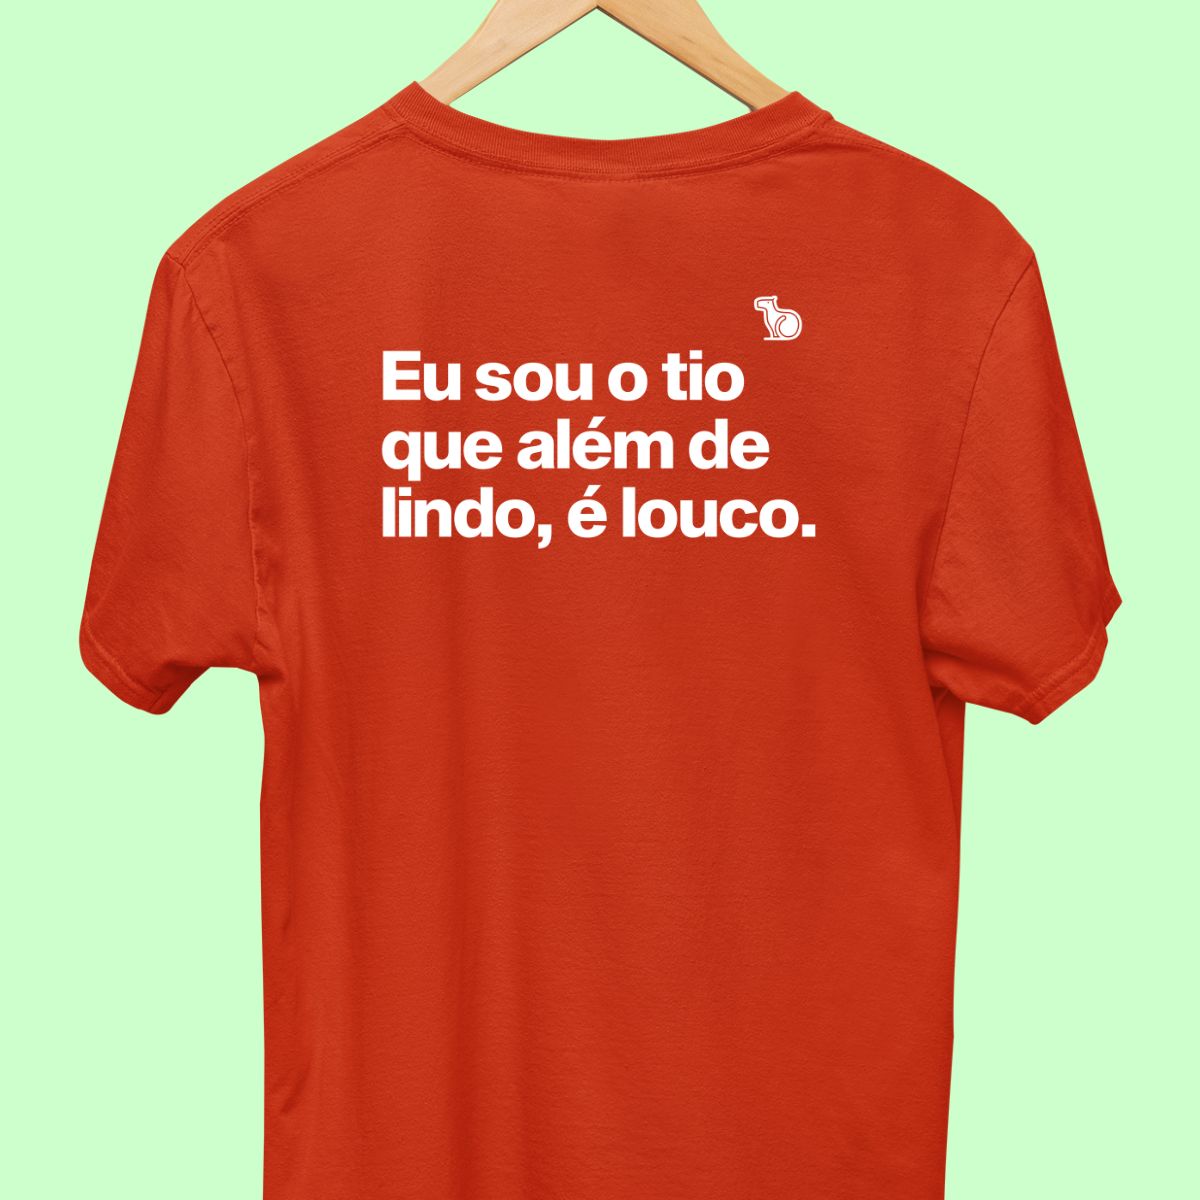 Camiseta com a frase "Eu sou o tio que além de lindo, é louco." masculina vermelha.